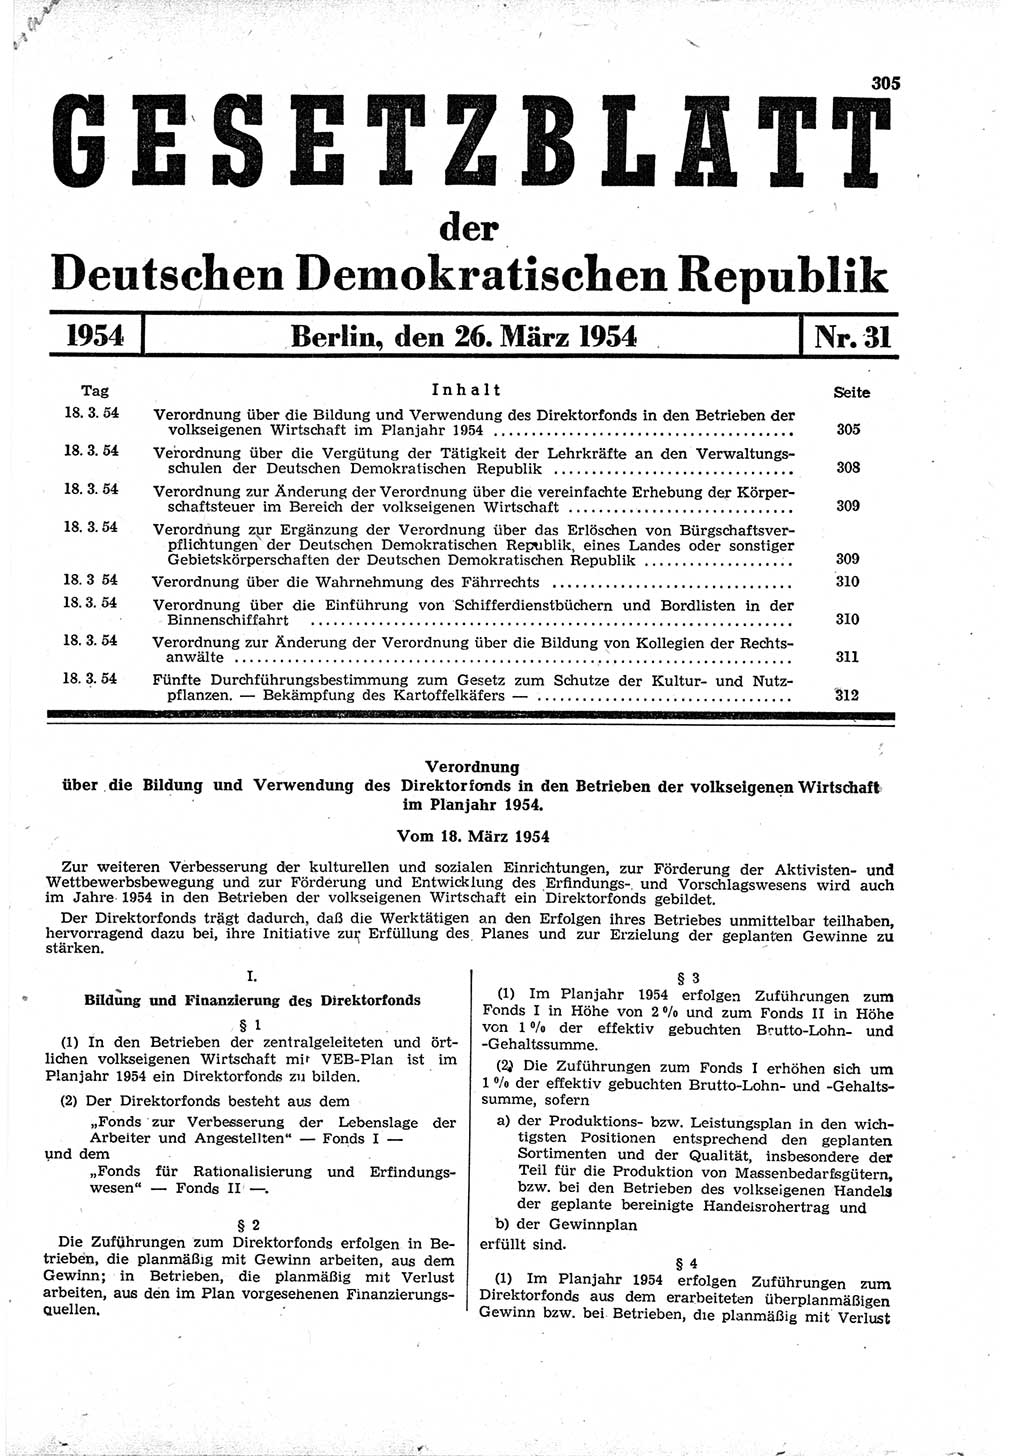 Gesetzblatt (GBl.) der Deutschen Demokratischen Republik (DDR) 1954, Seite 305 (GBl. DDR 1954, S. 305)